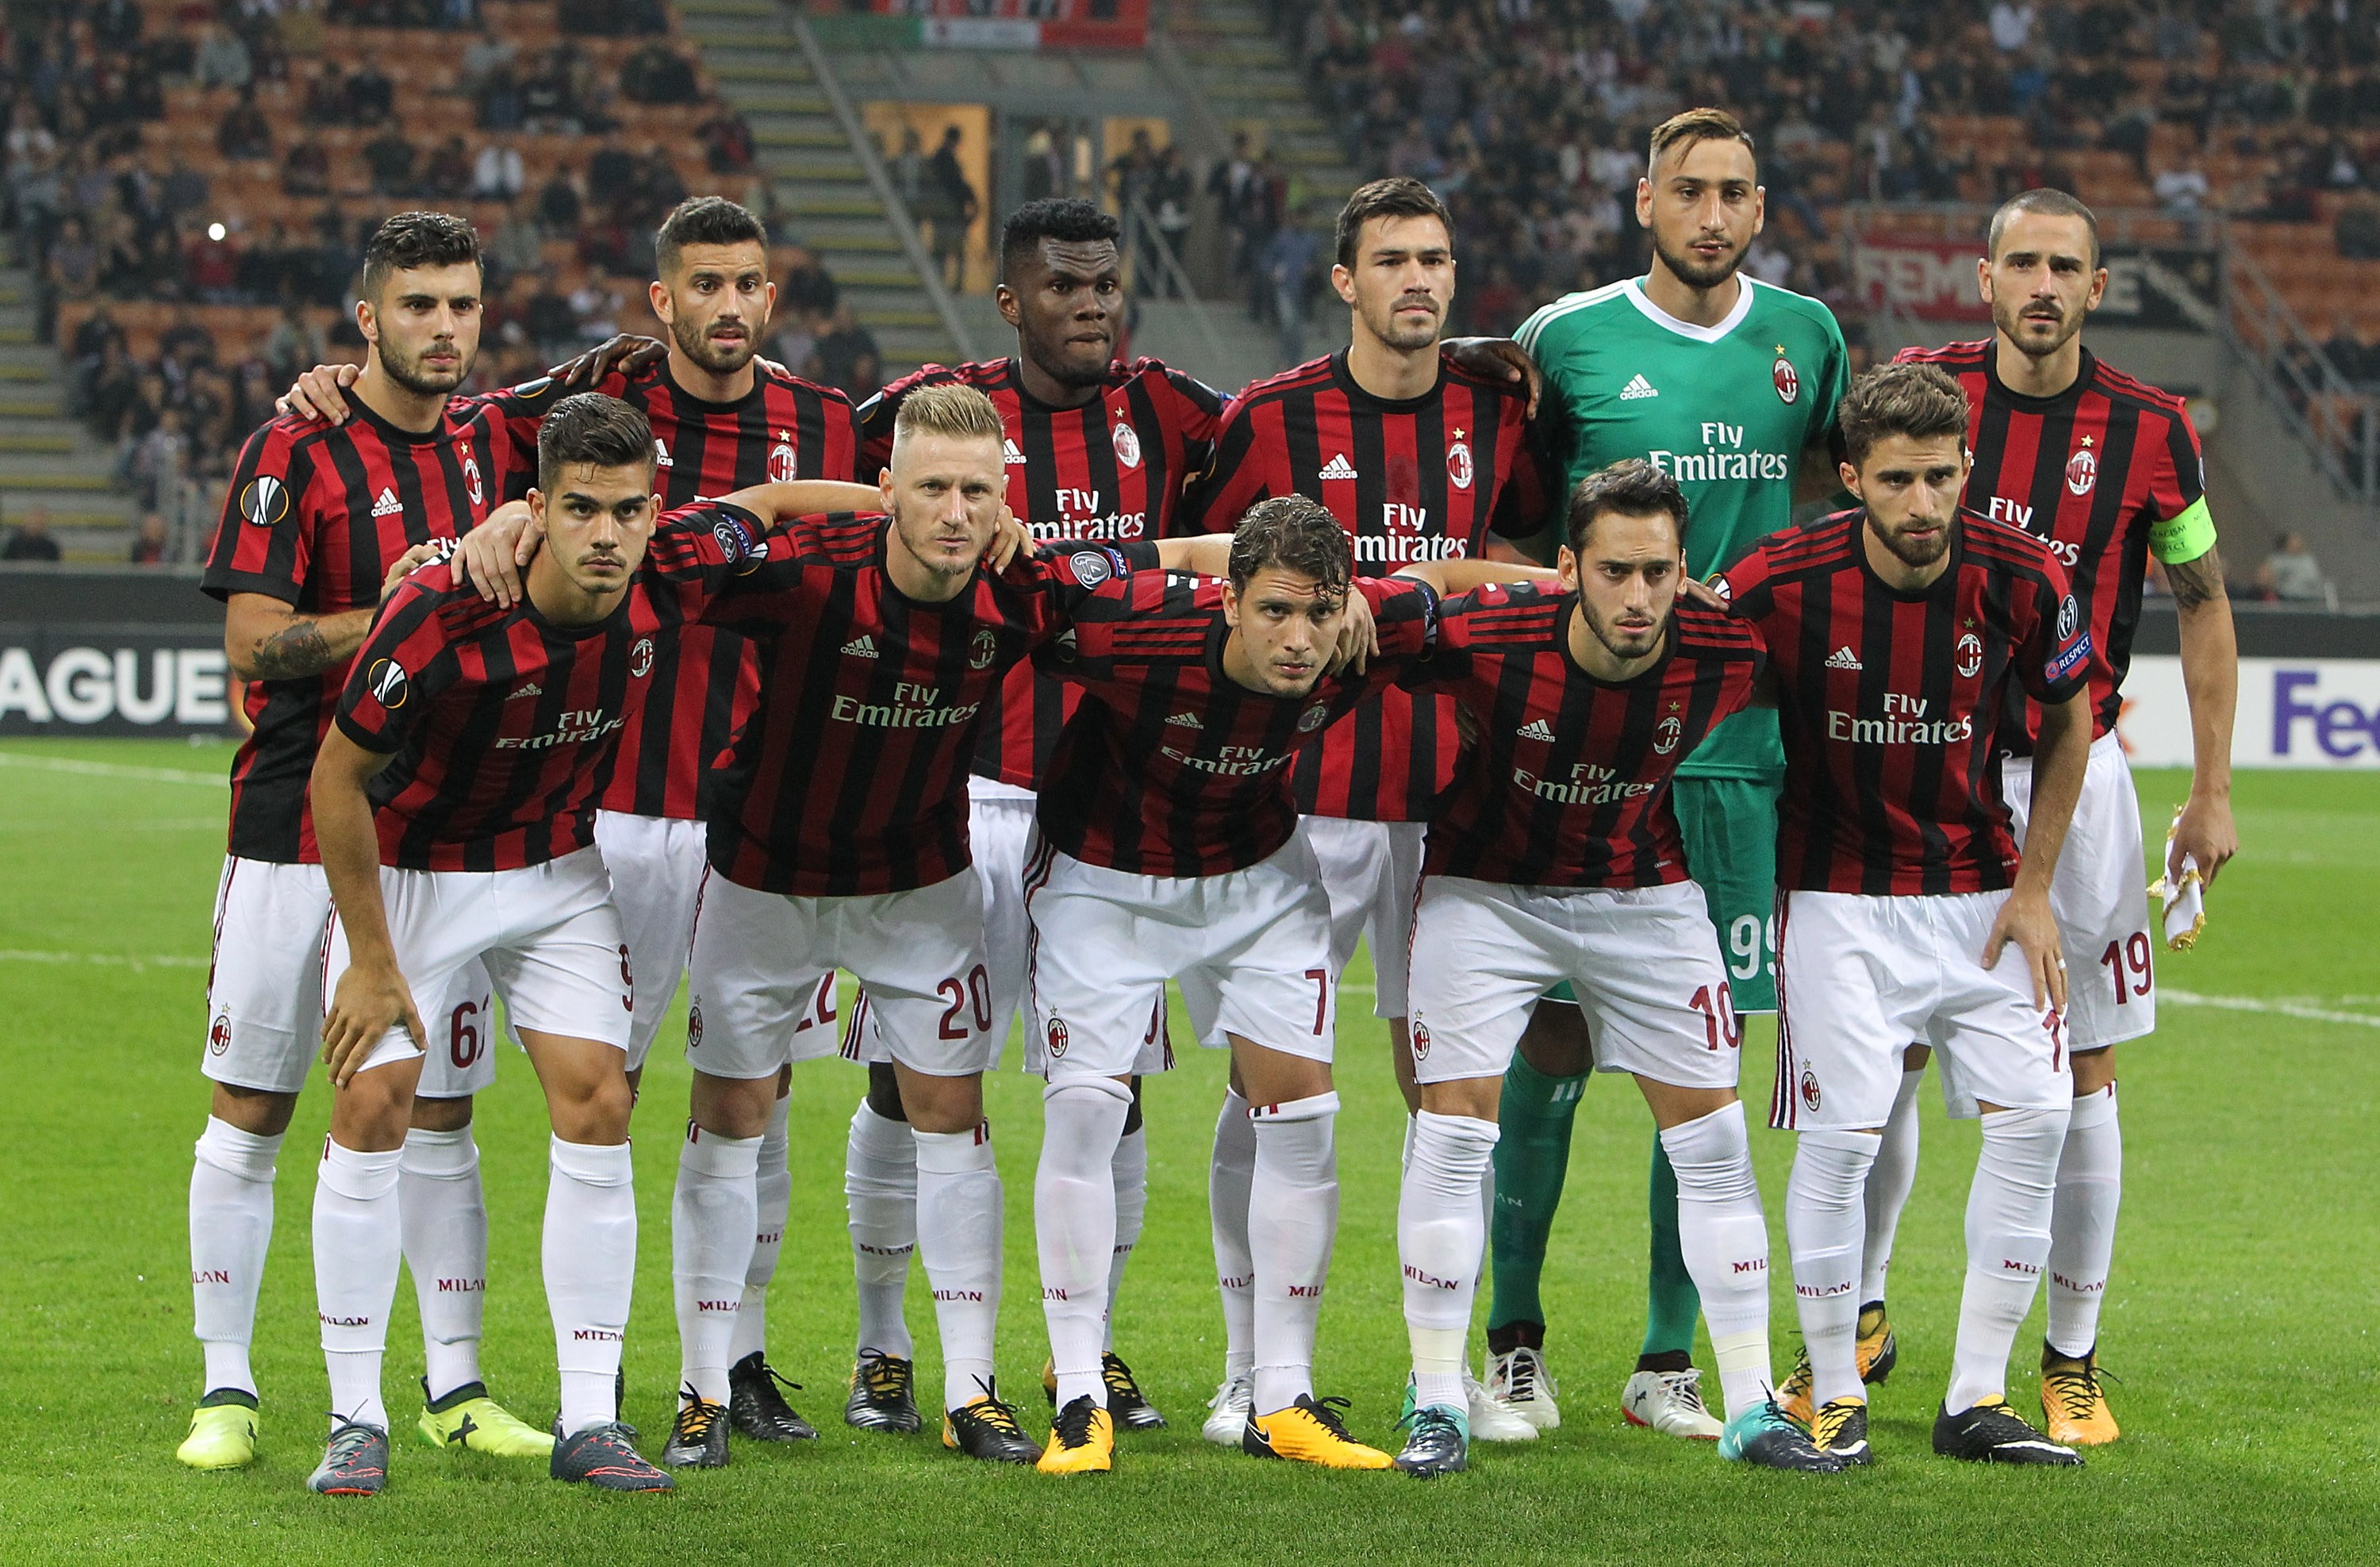 CHÍNH THỨC: AC Milan bị cấm tham dự các giải đấu của UEFA trong vòng 2 mùa tới  - Bóng Đá